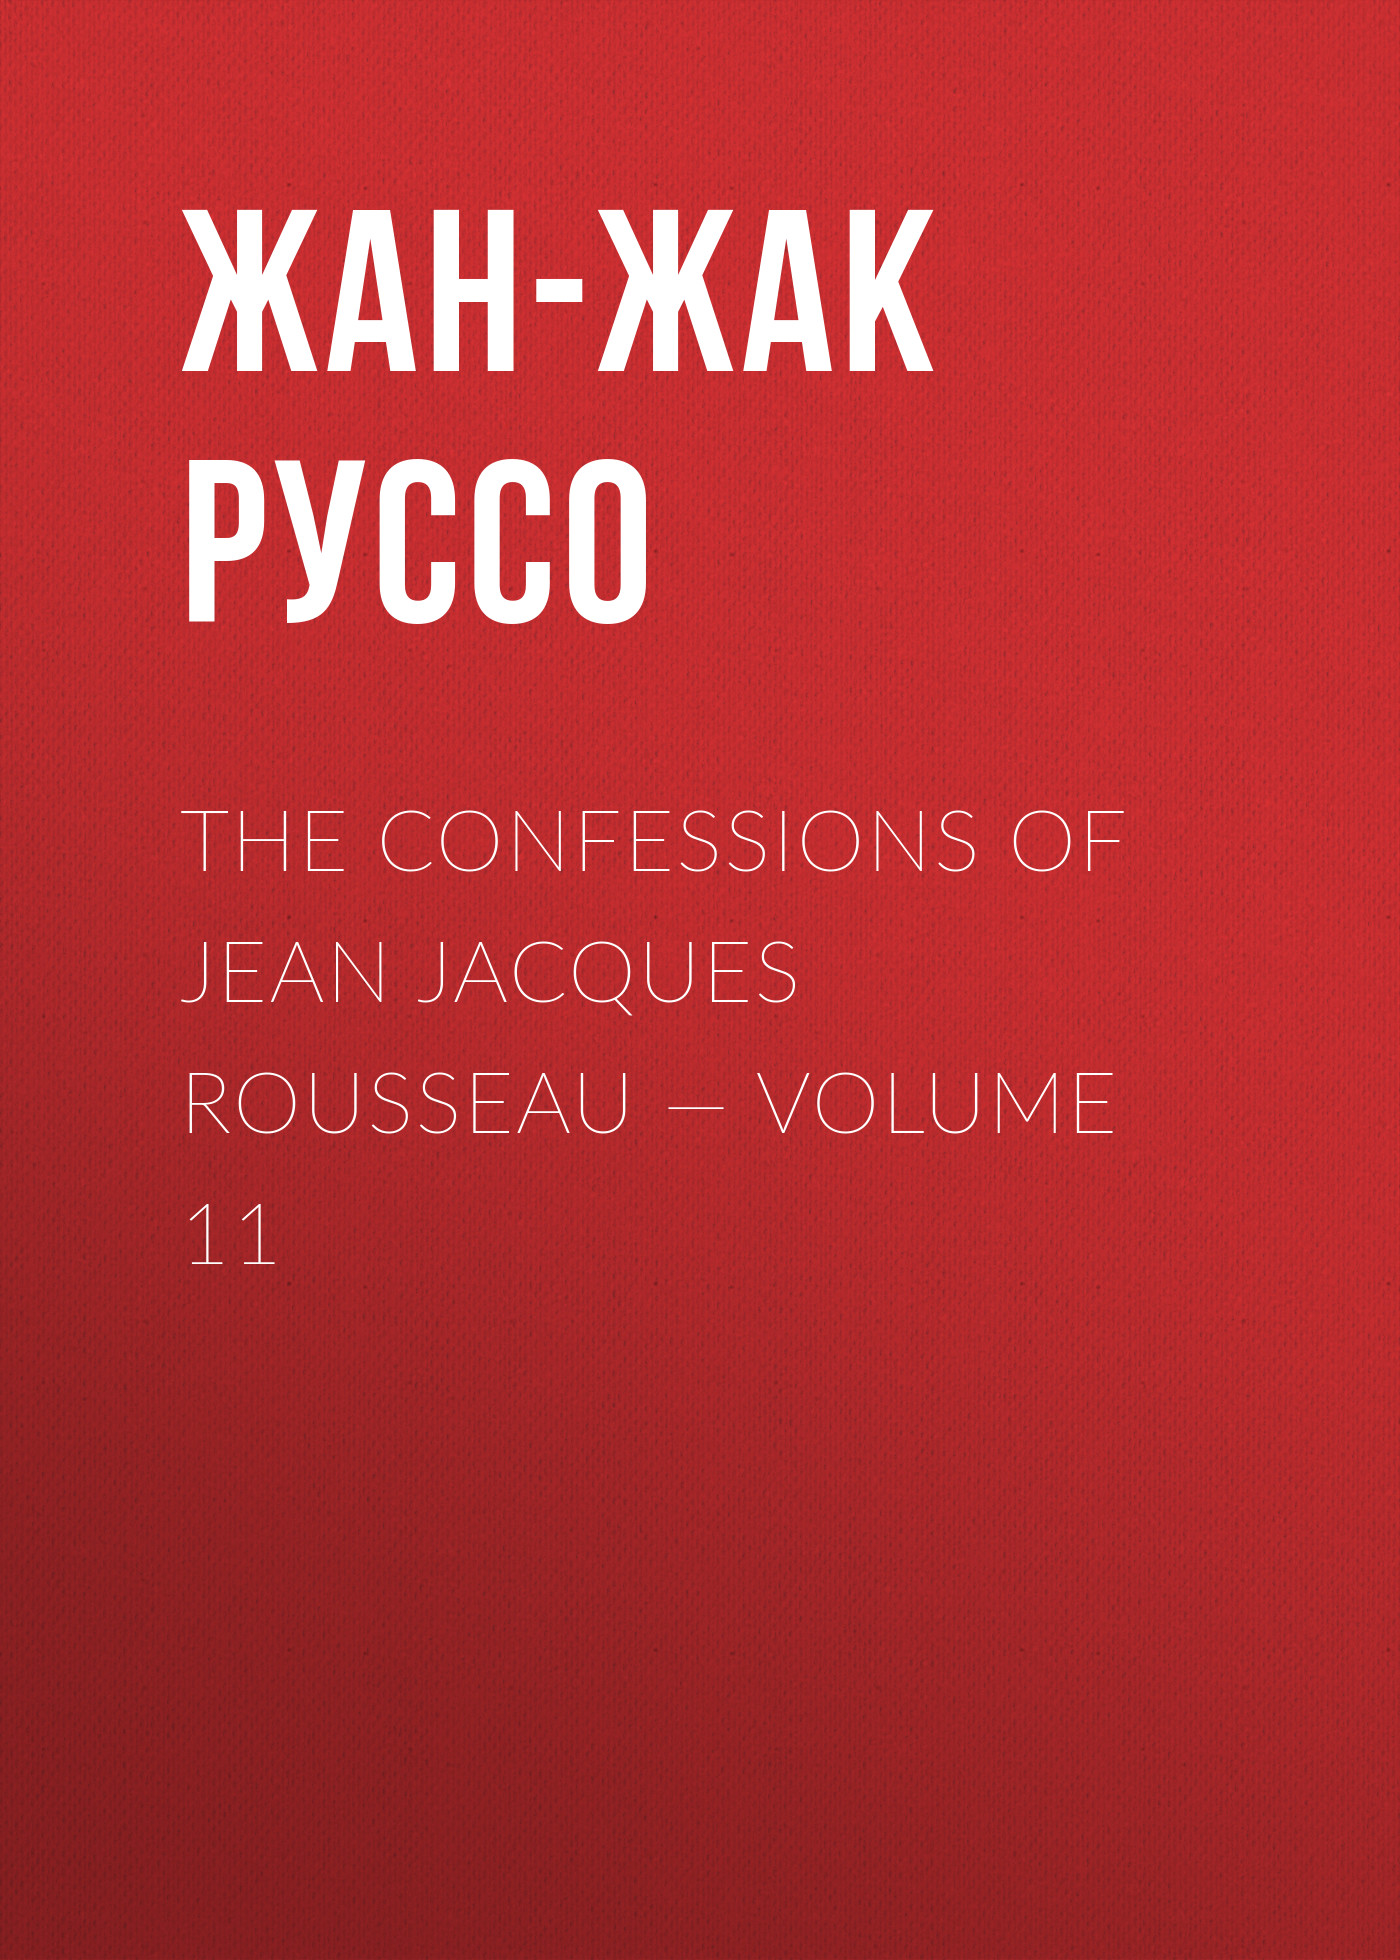 Книга The Confessions of Jean Jacques Rousseau – Volume 11 из серии , созданная Жан-Жак Руссо, может относится к жанру Биографии и Мемуары, Литература 18 века, Зарубежная старинная литература. Стоимость электронной книги The Confessions of Jean Jacques Rousseau – Volume 11 с идентификатором 34840222 составляет 0 руб.